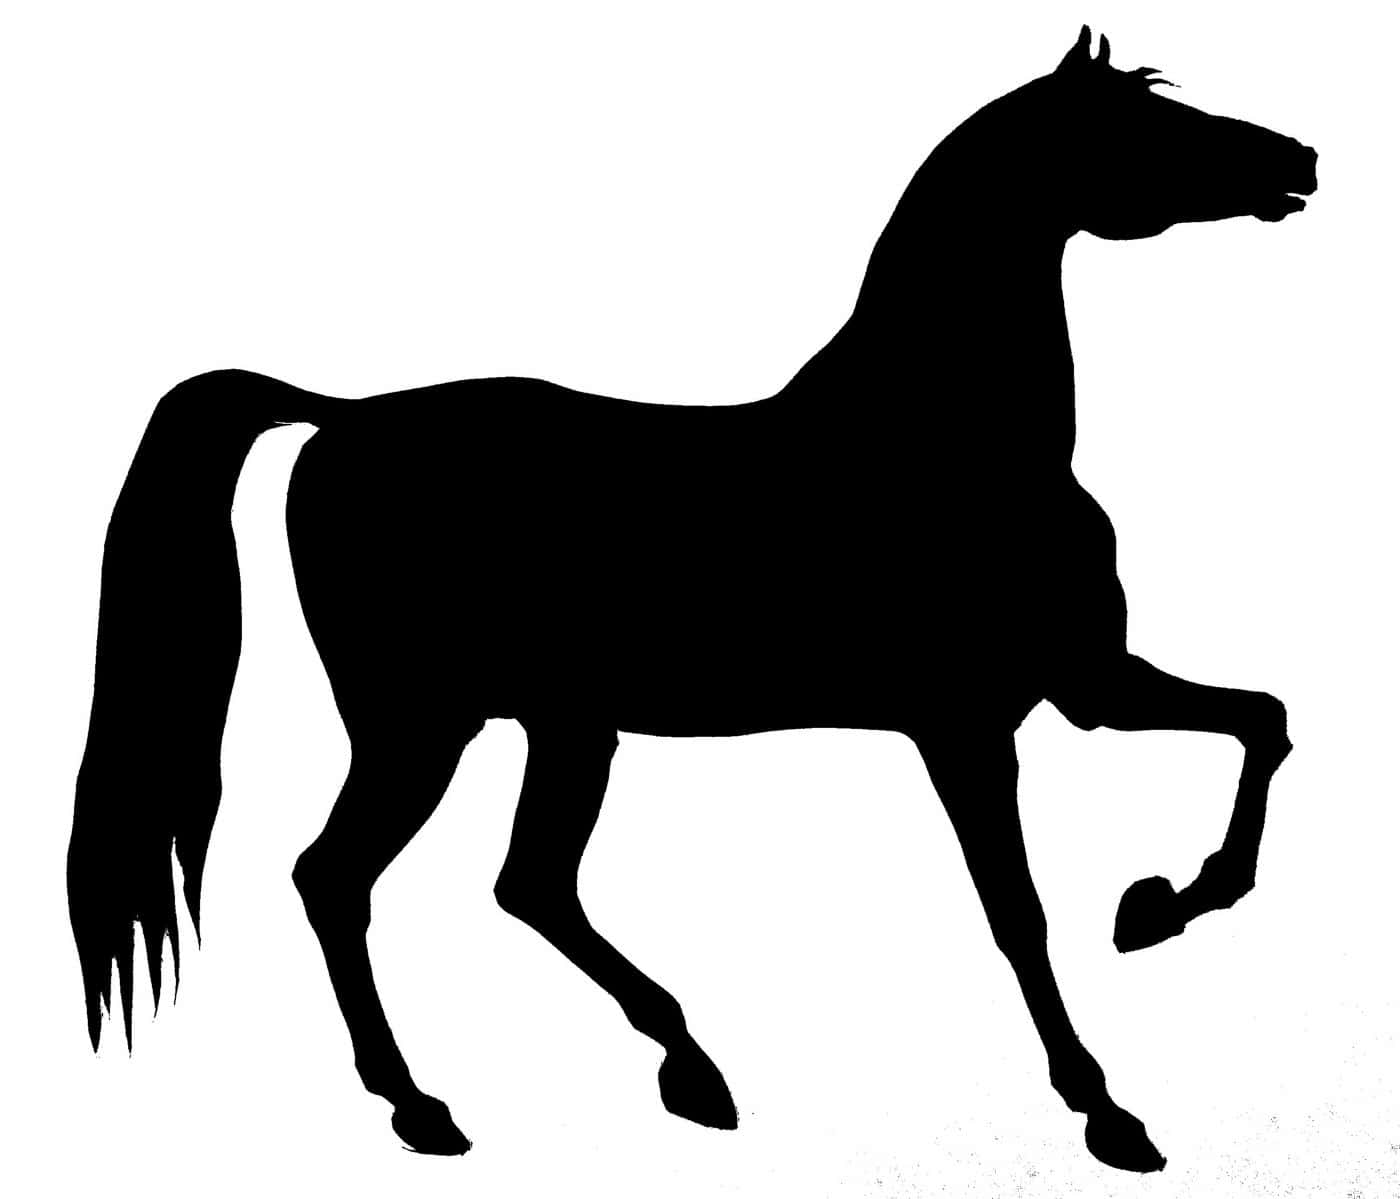 Einesilhouette Eines Pferdes Beim Laufen Wird Gezeigt.